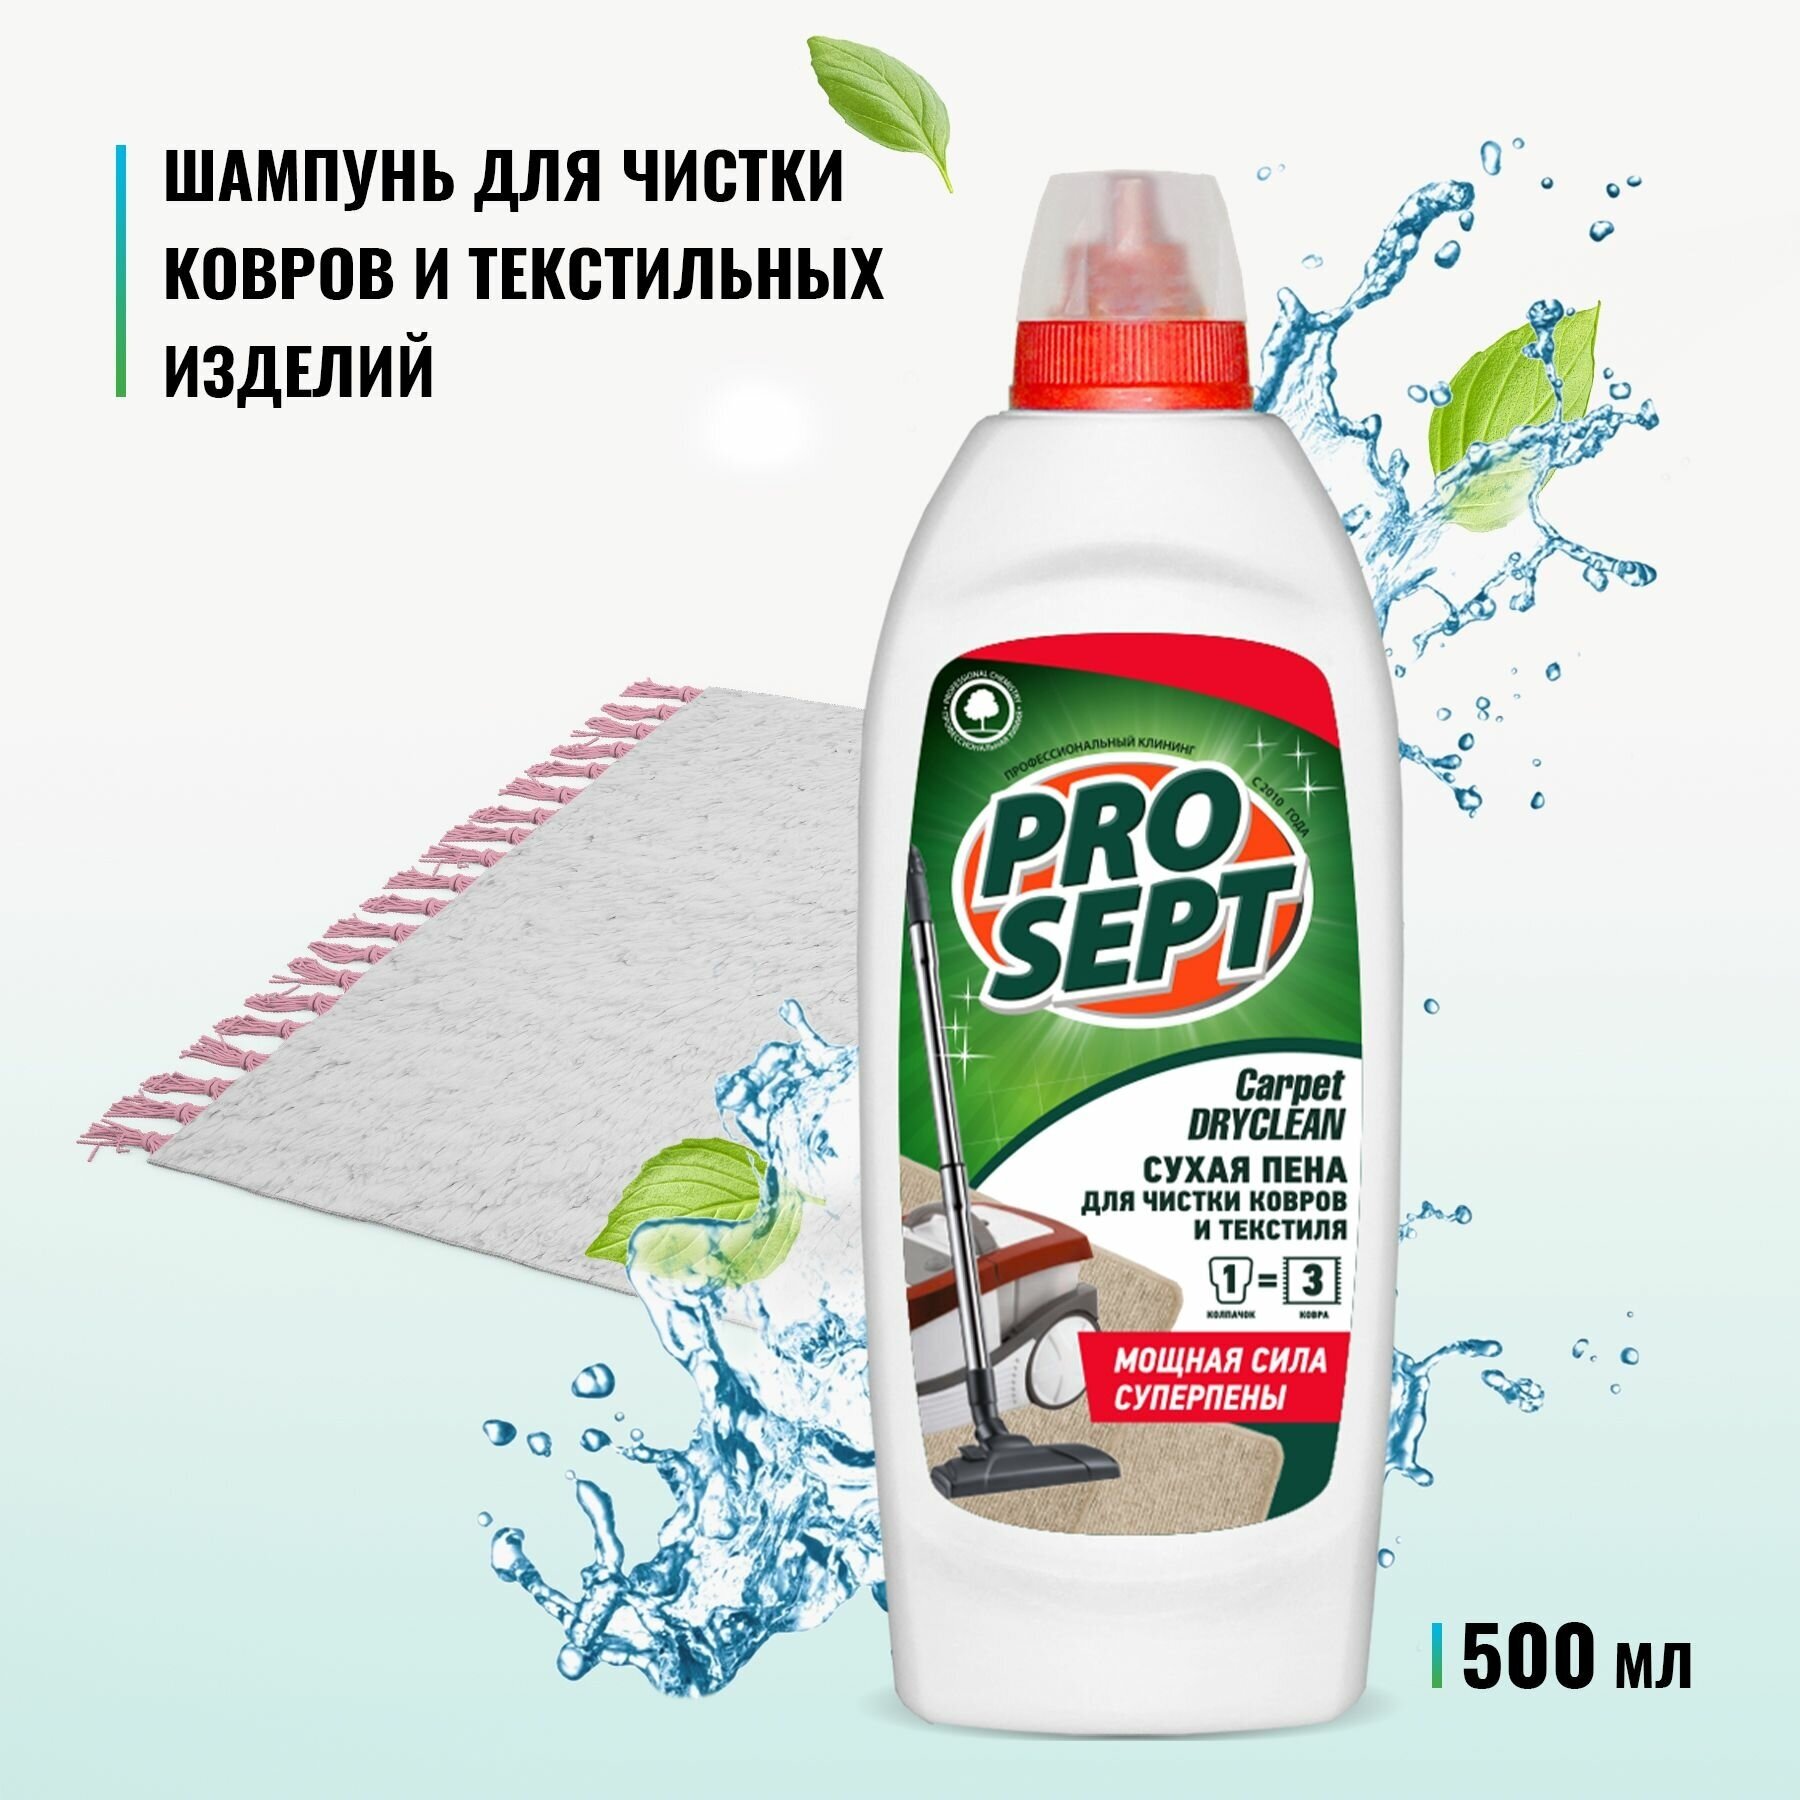 PROSEPT Шампунь для сухой чистки ковров и мягкой мебели Carpet DryClean, 0.5 л